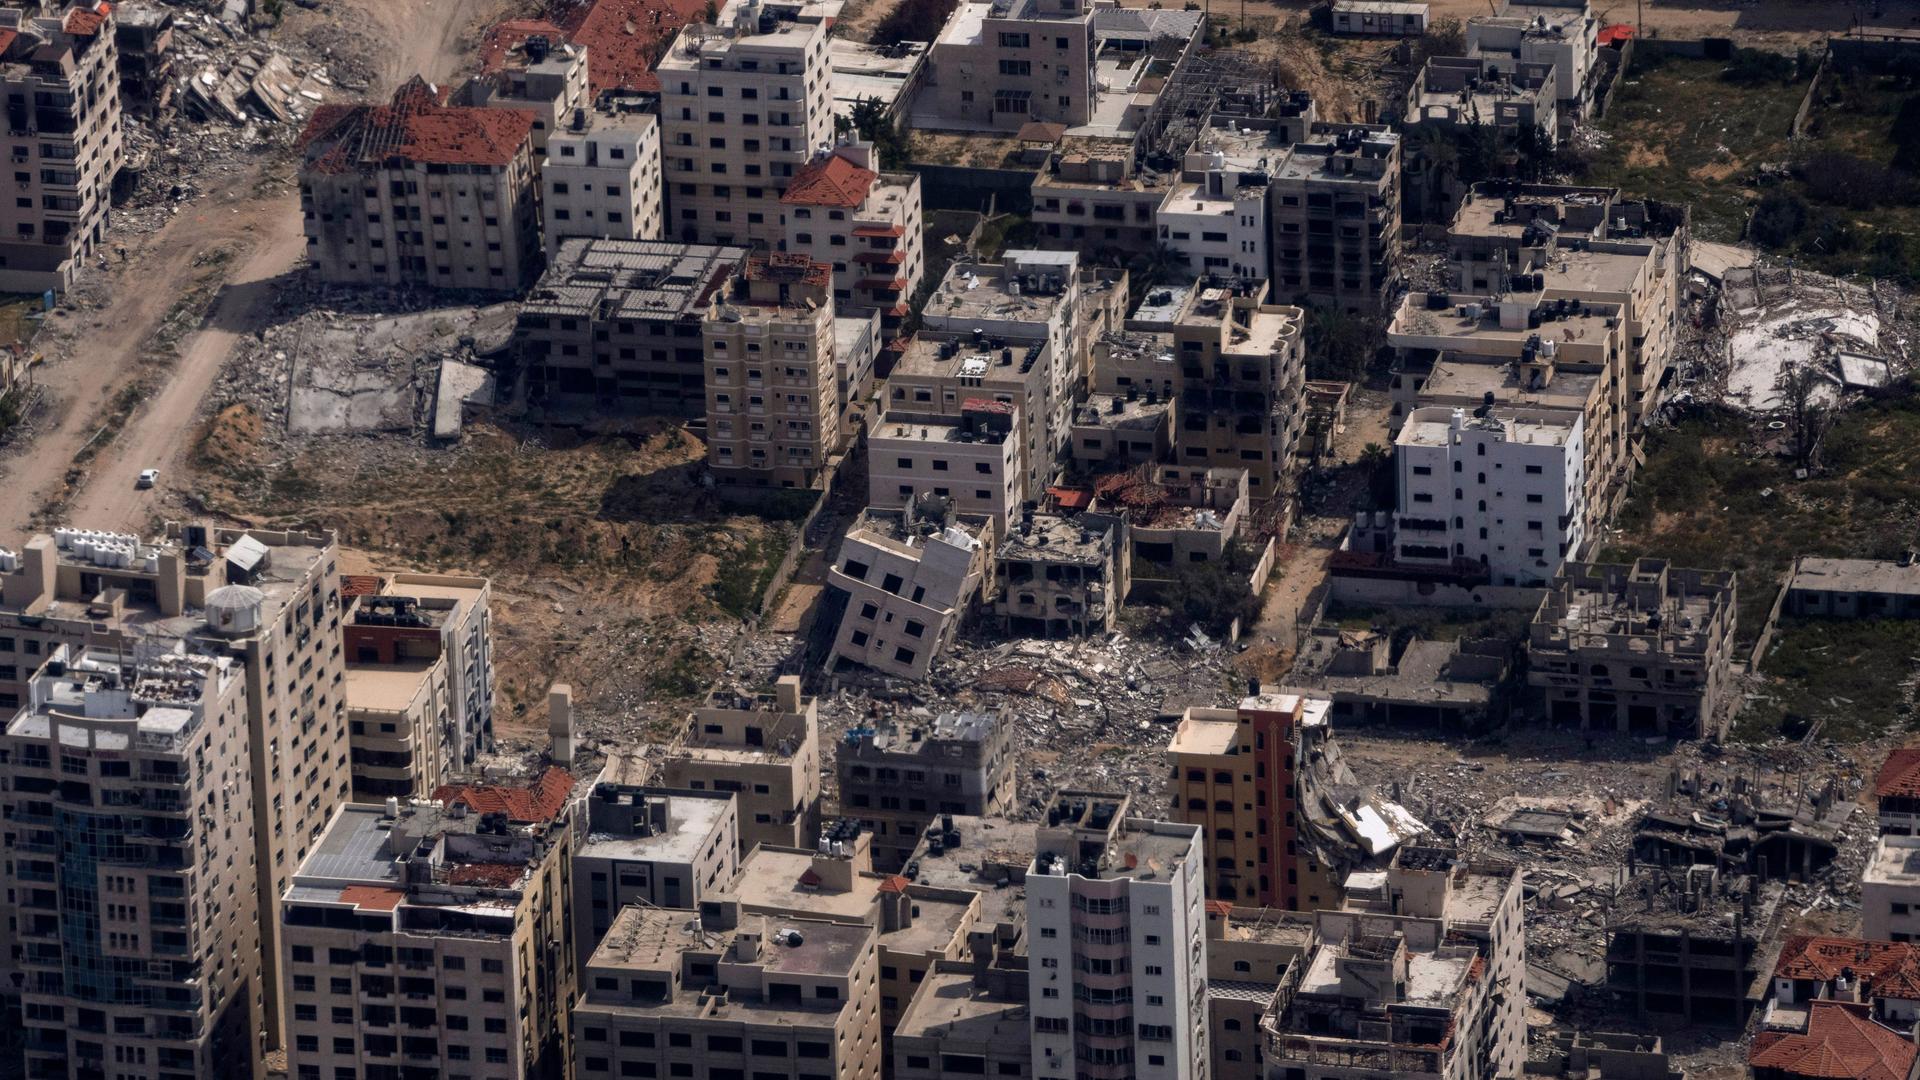 Blick auf zerstörte Gebäude in Gaza aus einem Flugzeugfenster heraus